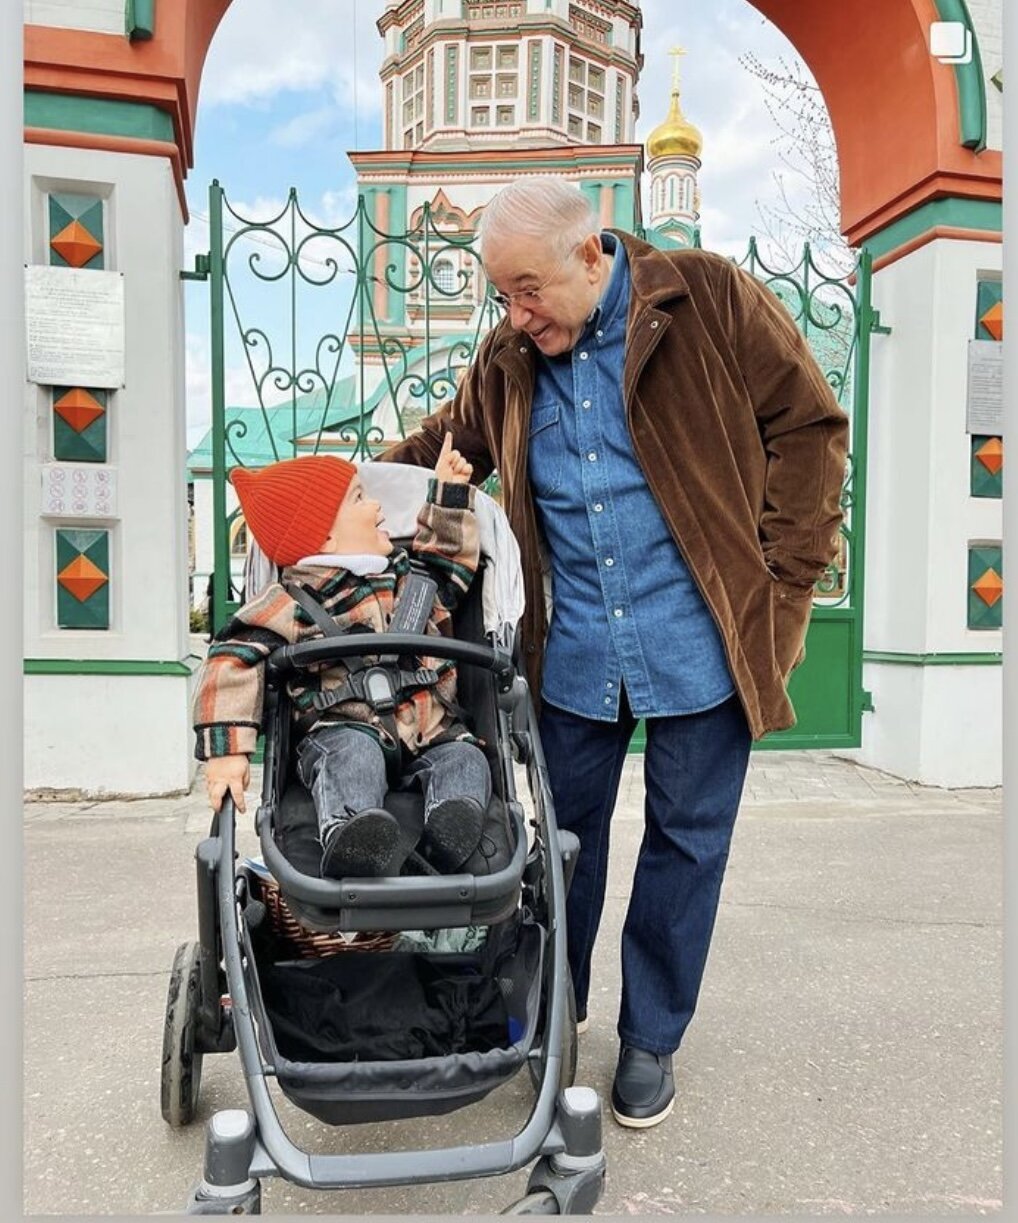 Евгений Петросян поделился снимком с сыном